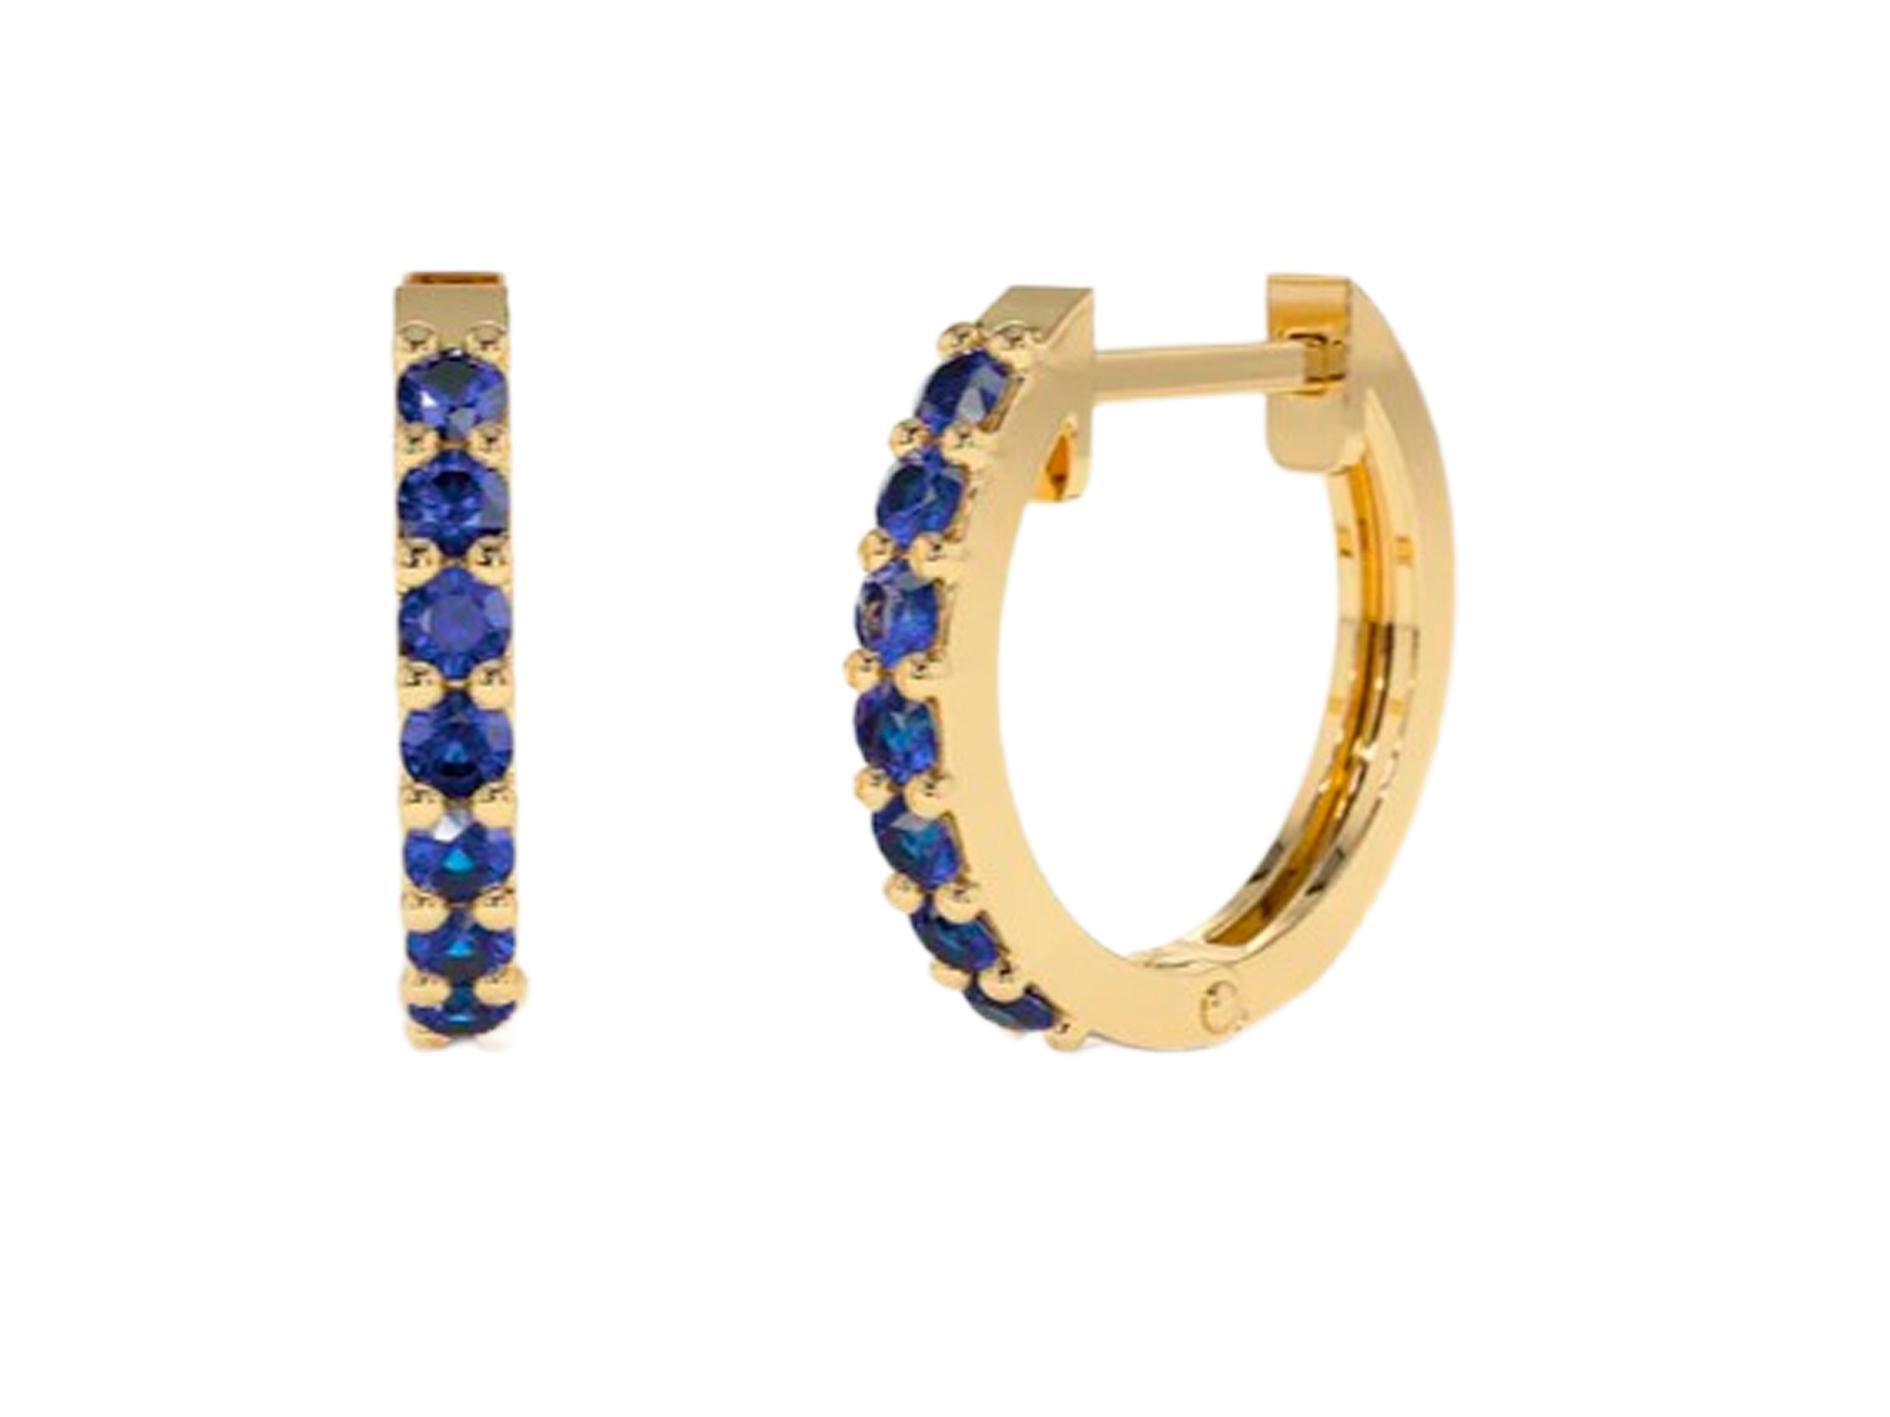 Hoop Earrings with Lab Sapphires. Huggy hoop sapphire earrings in 14 Karat Gold

Metal: 14kt solid gold
Earring size:
The Inner diameter of Earrings: 10MM
The Outer diameter of Earrings: 12MM
Weight: 2.2. g.

Gemstones:
Lab sapphires: 14 piece,